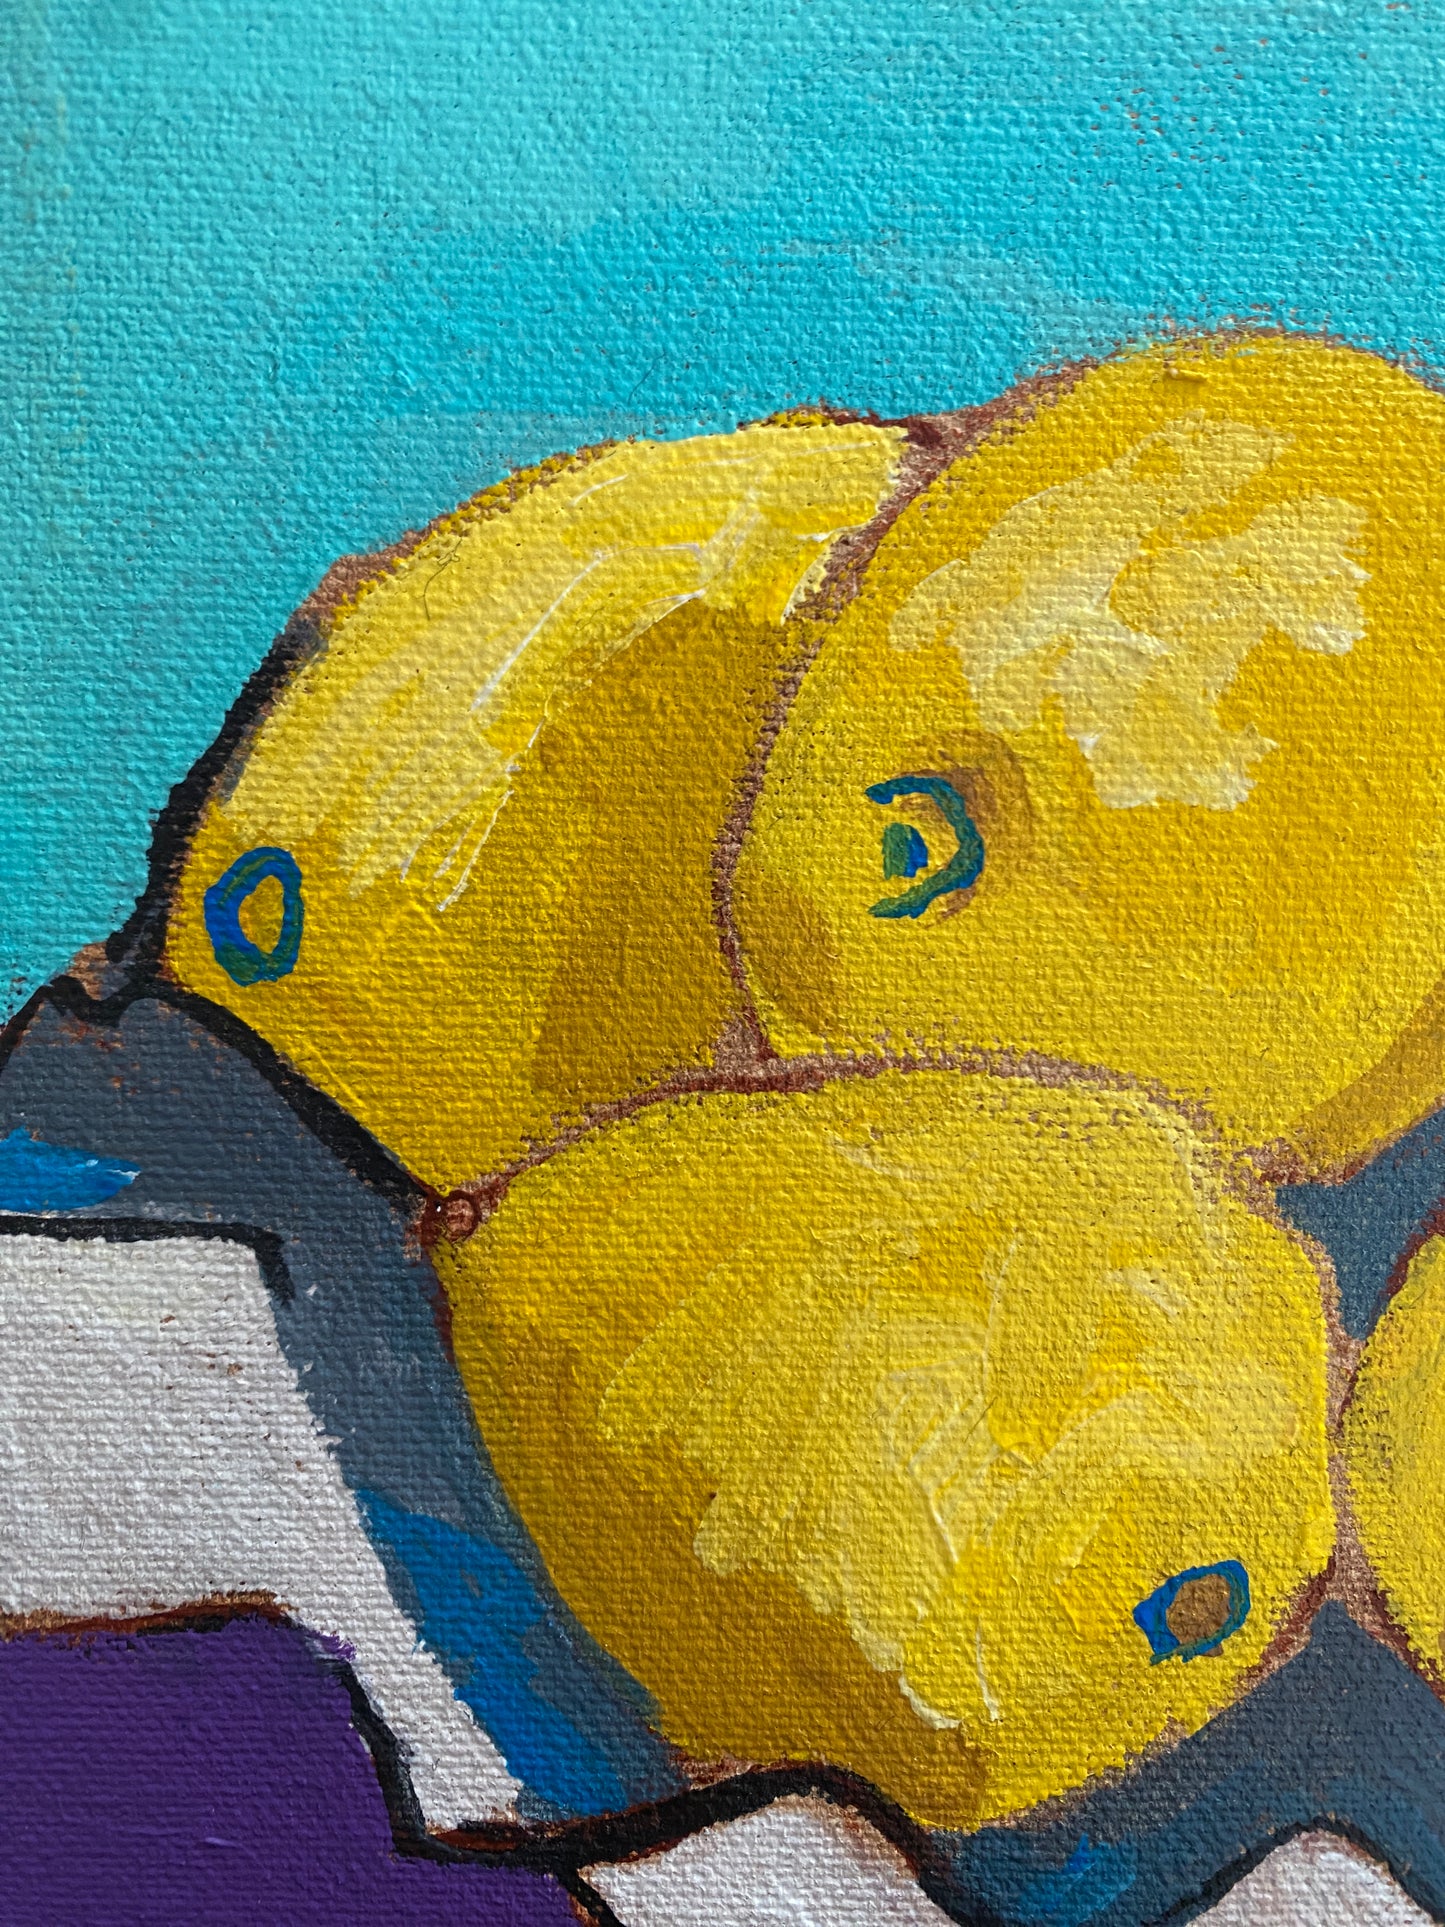 Original Wall Art / Lemons on Teal and Purple 10”x10” / Yellow